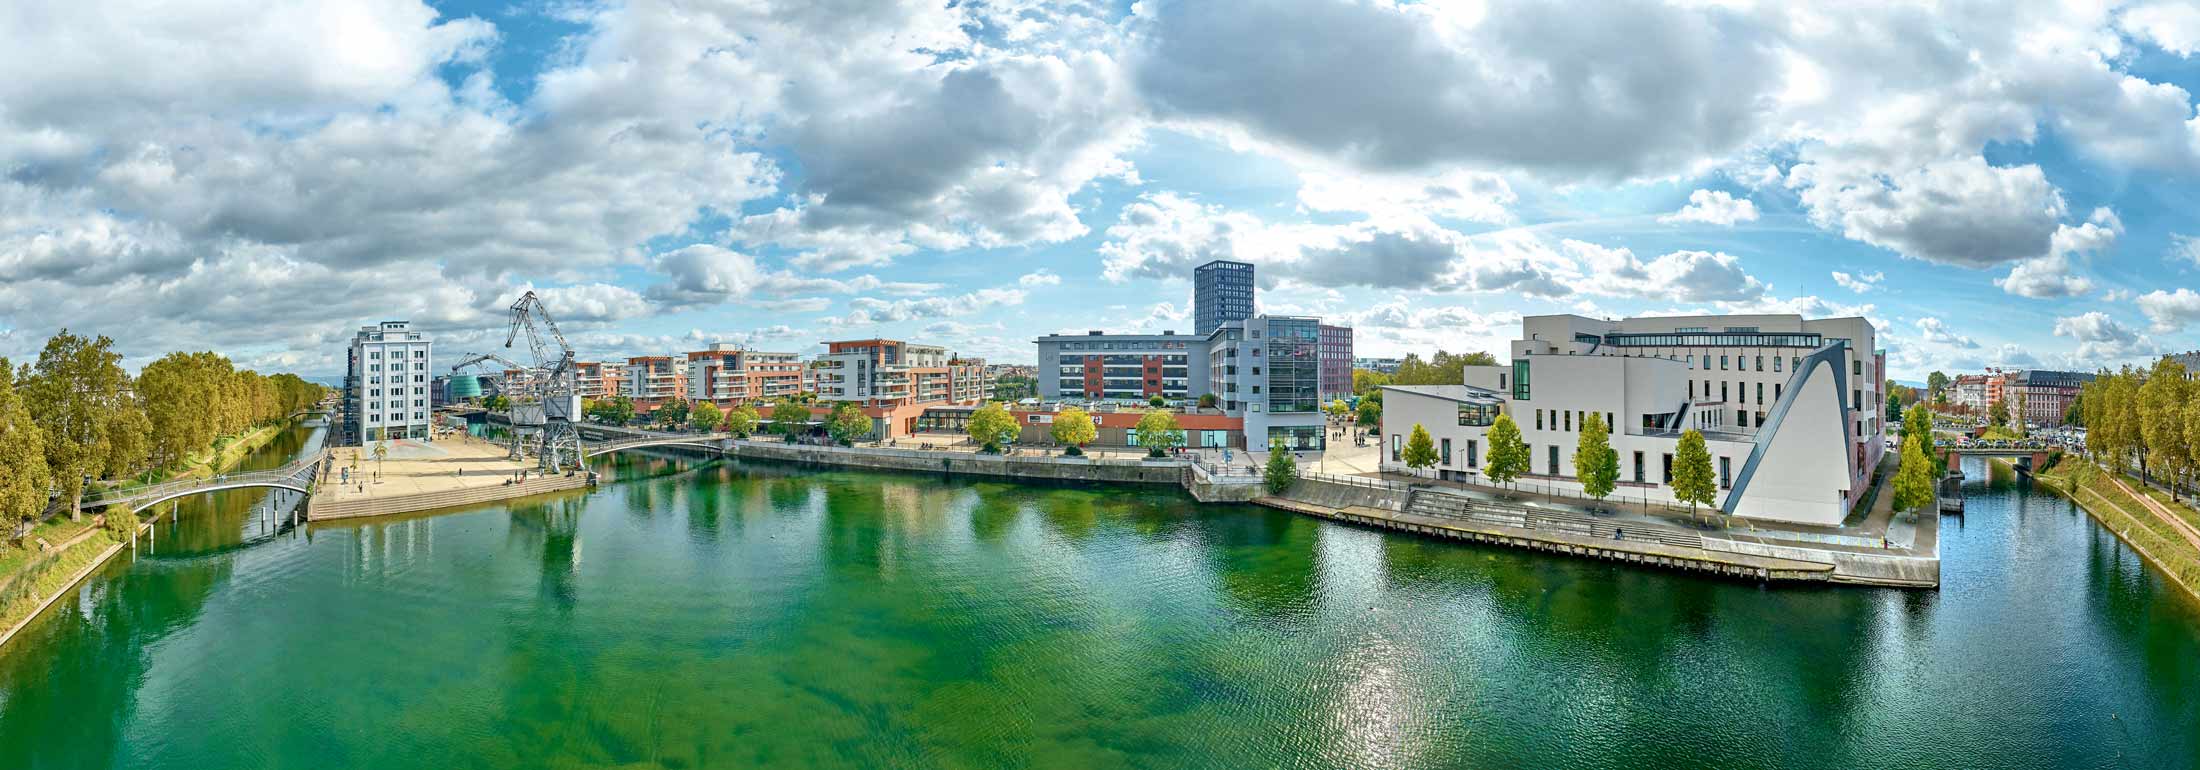 Panoramique réalisée par drone du Bassin Austerlitz à Strasbourg